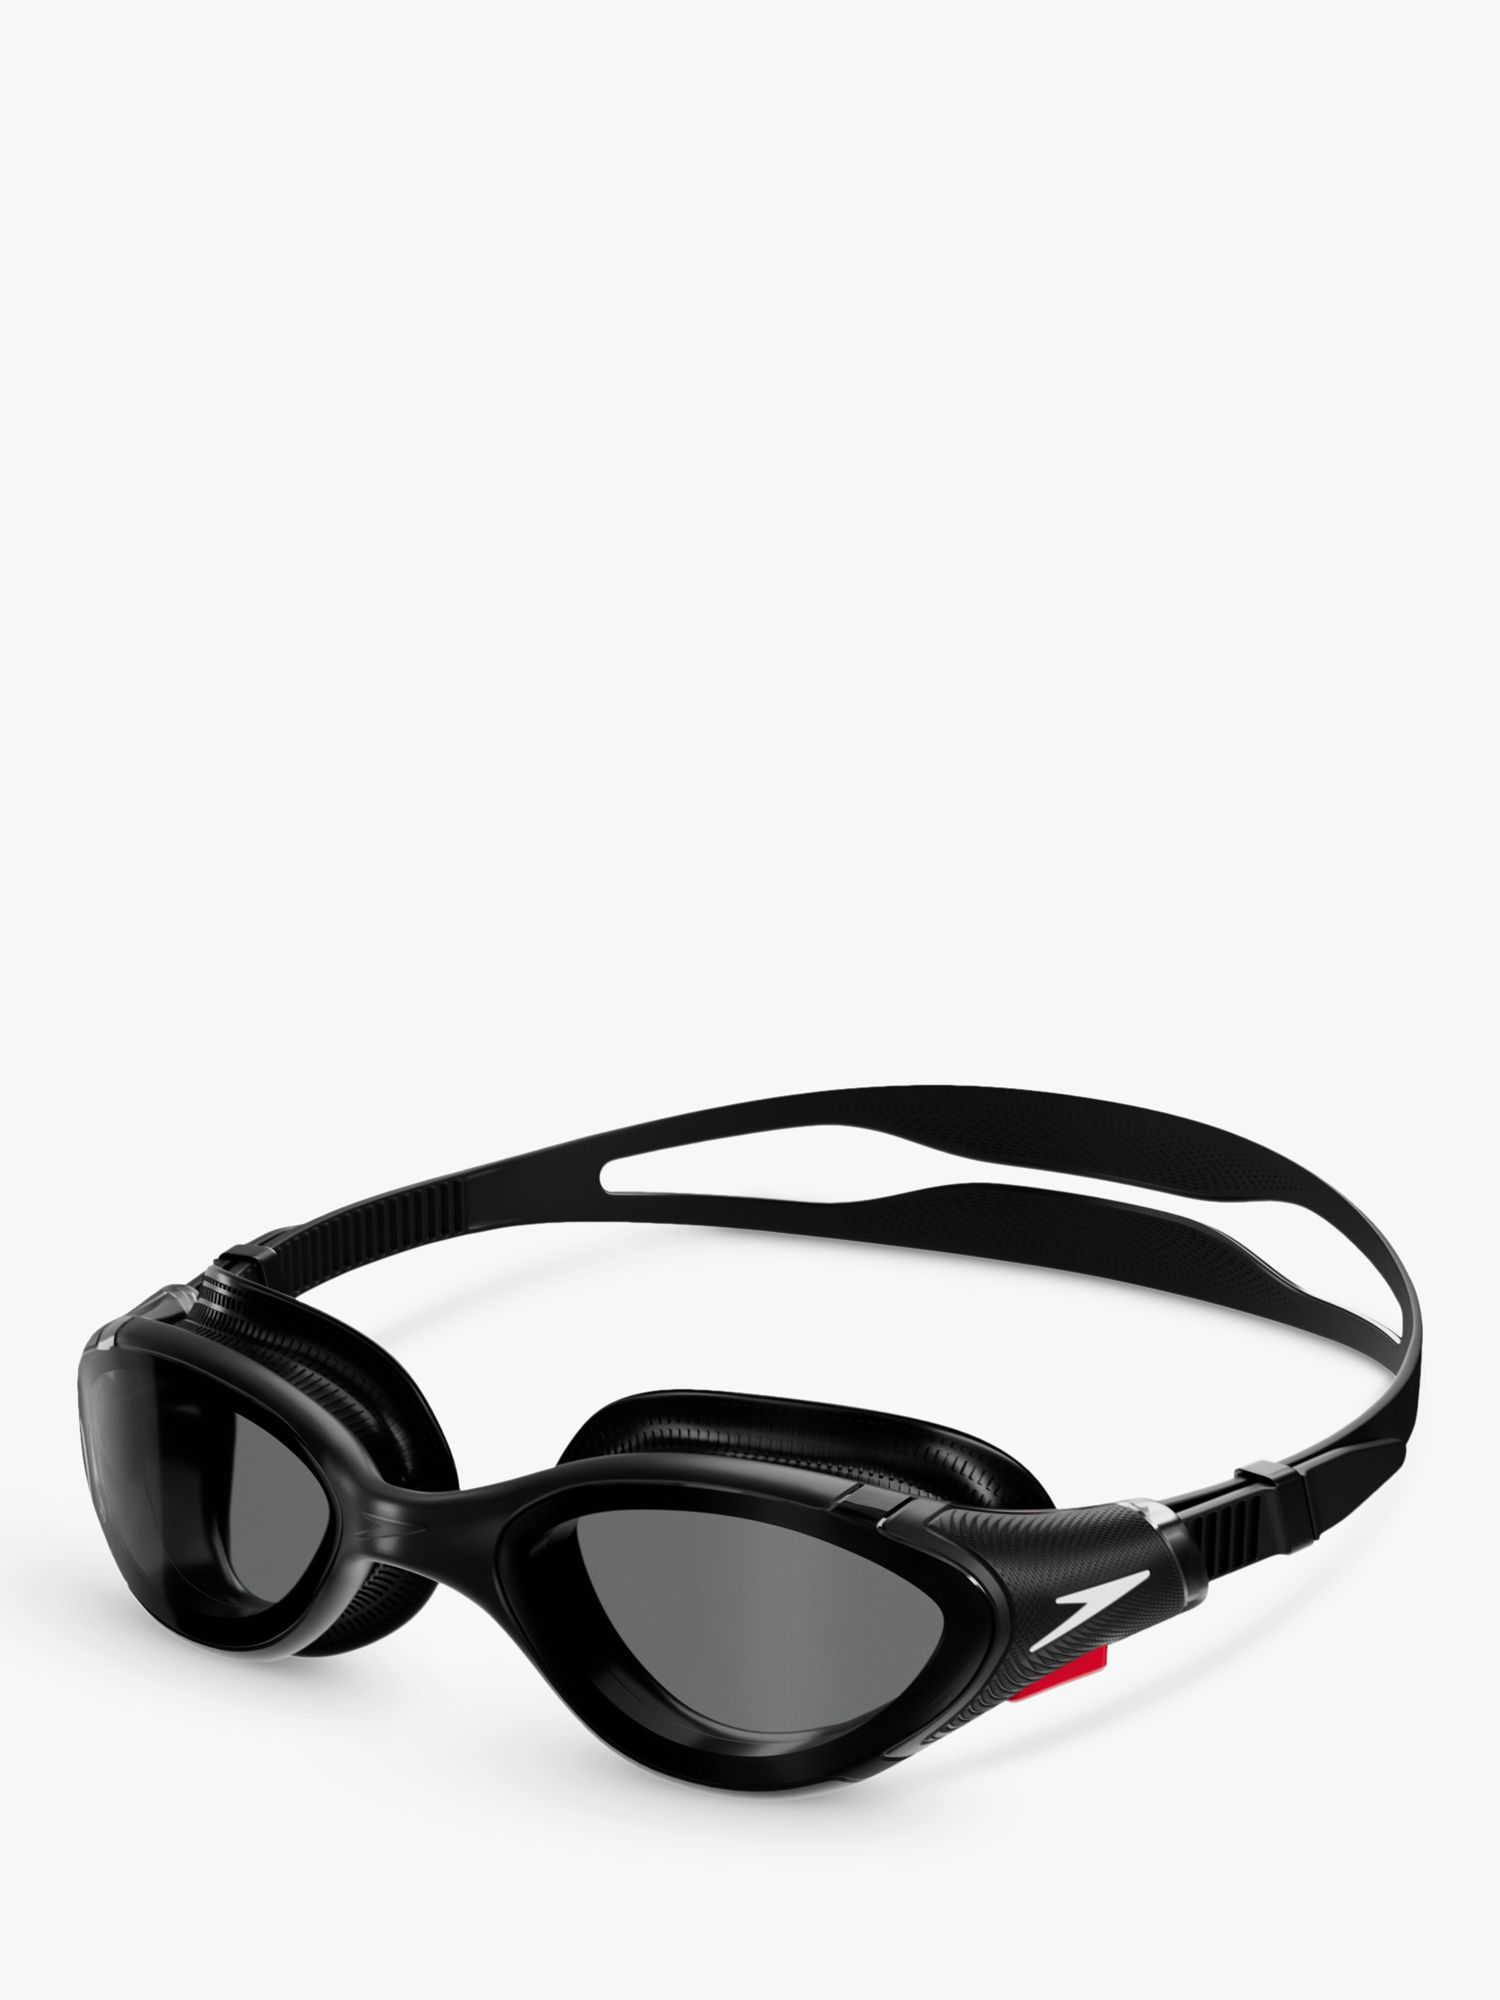 Speedo Futura Plus AU Swimming Goggles Black